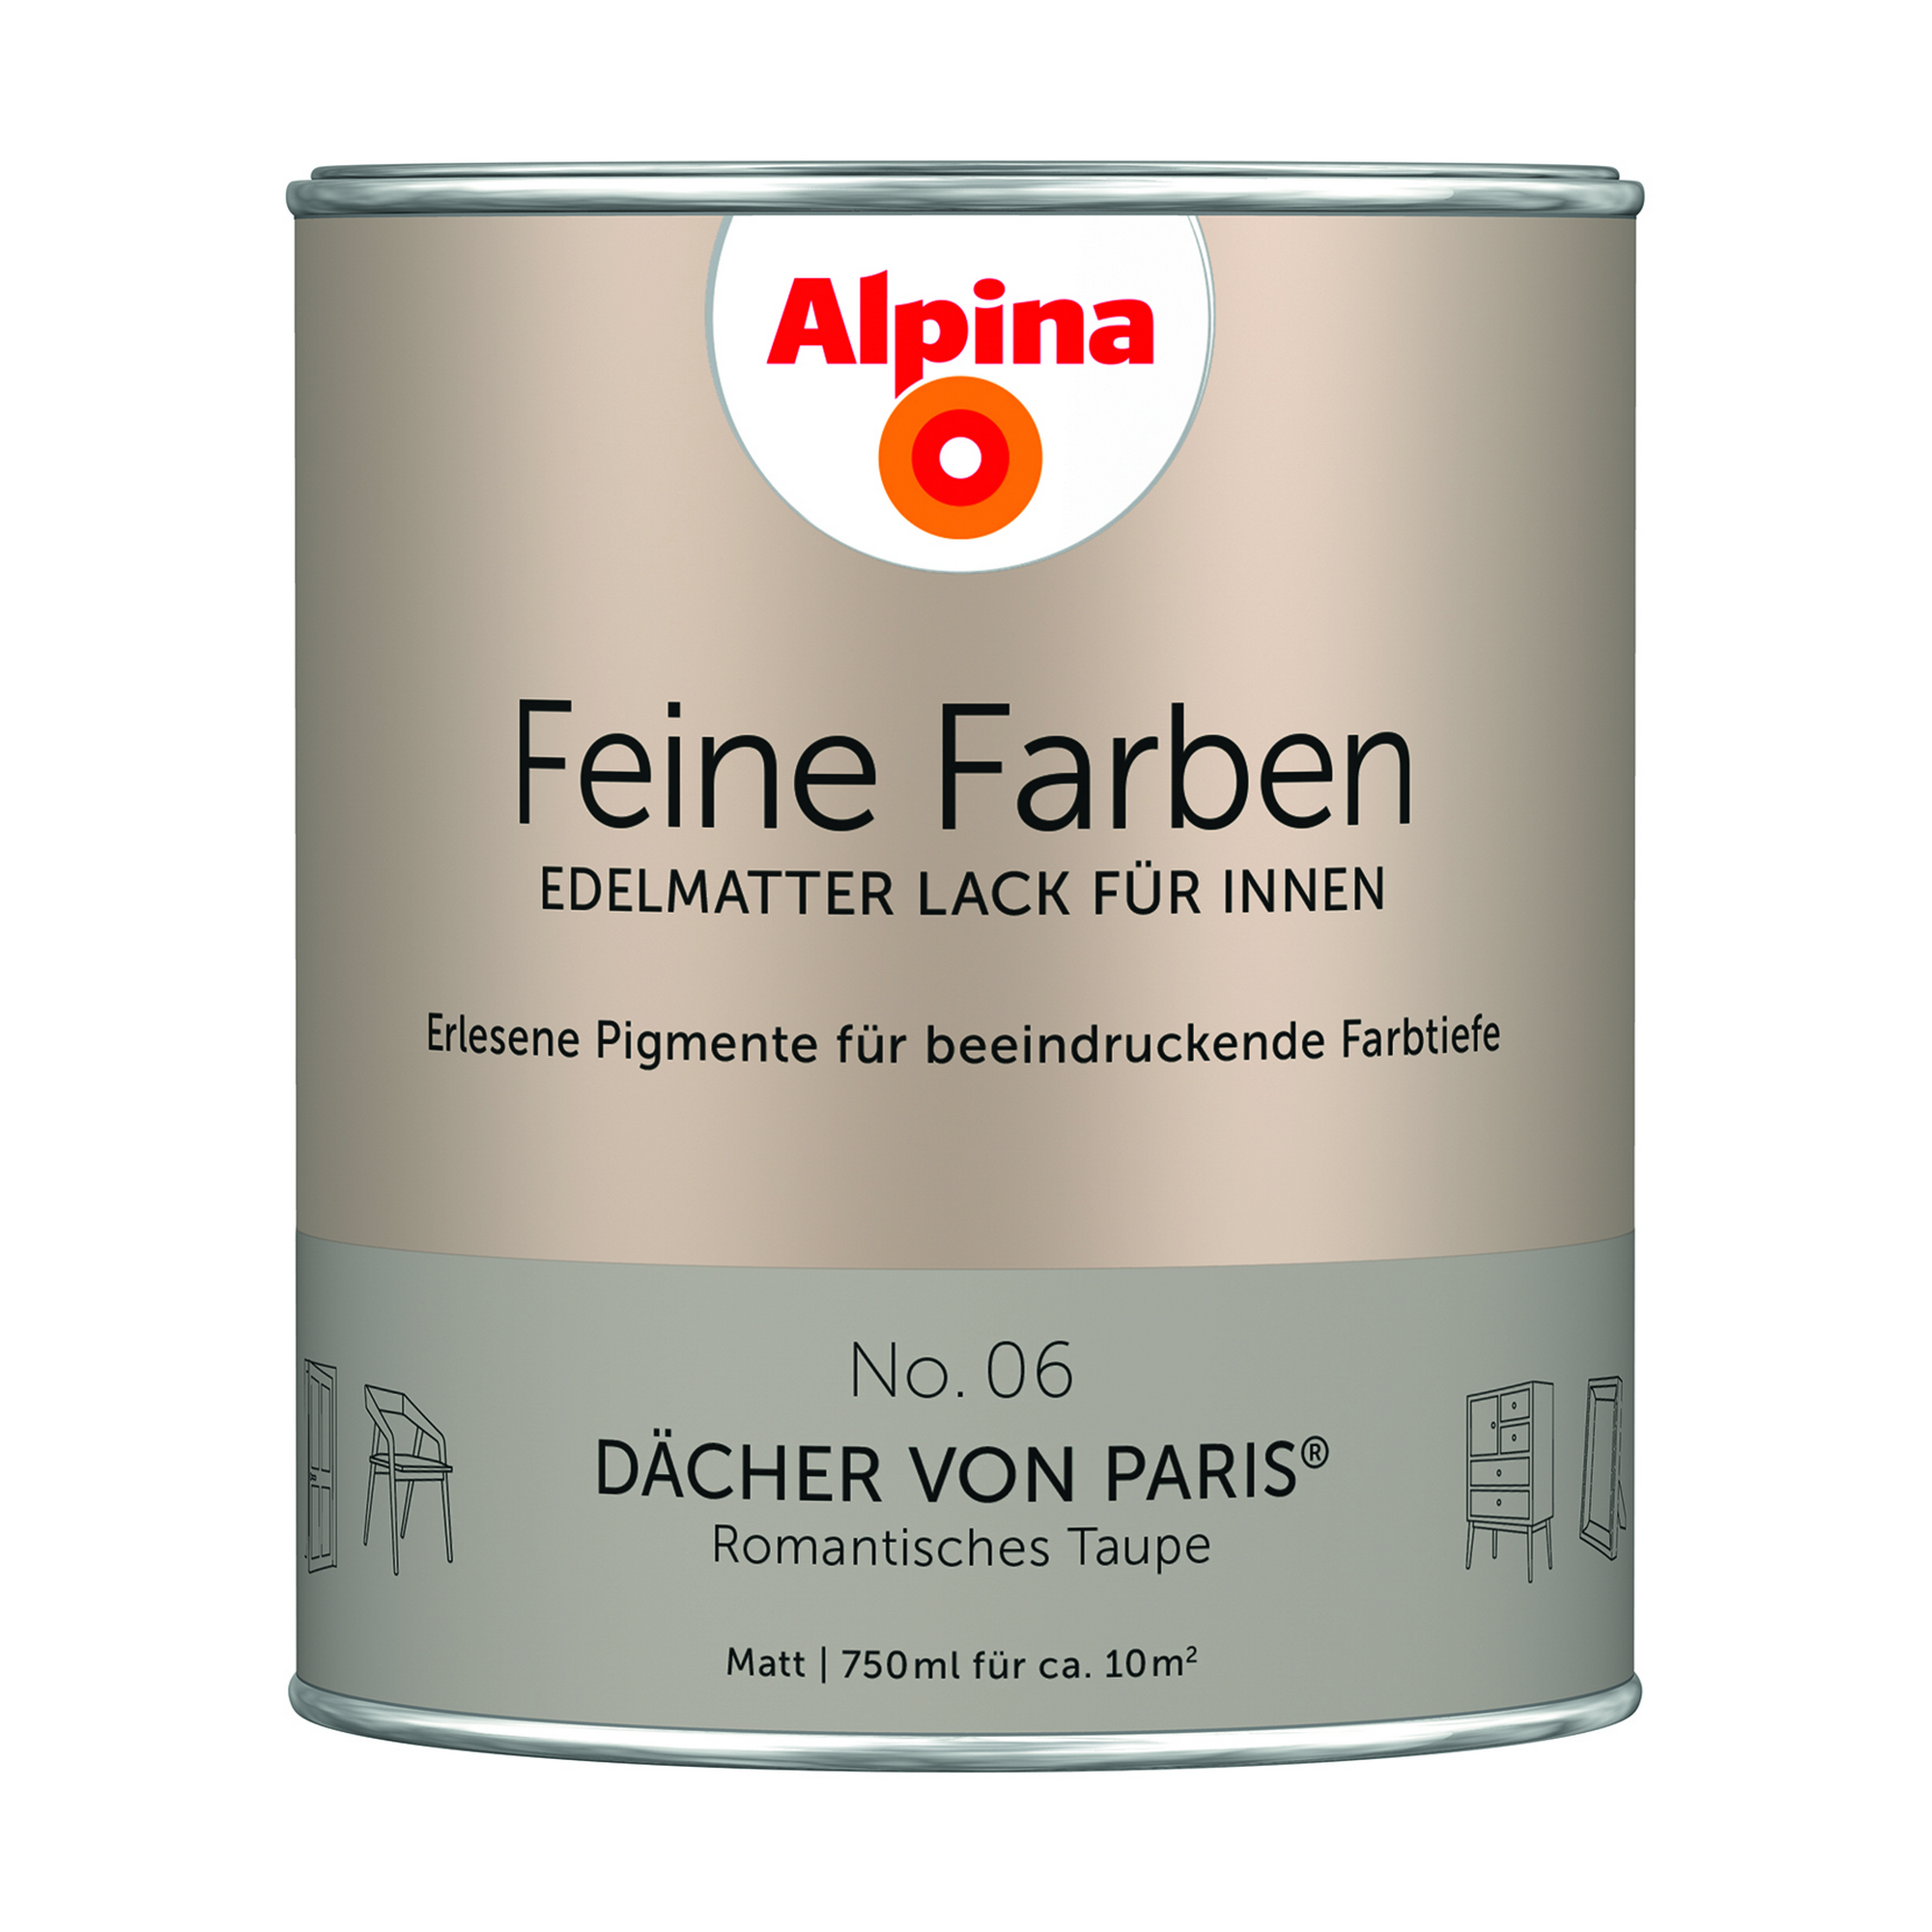 Feine Farben 'Dächer von Paris' taupe matt 750 ml + product picture